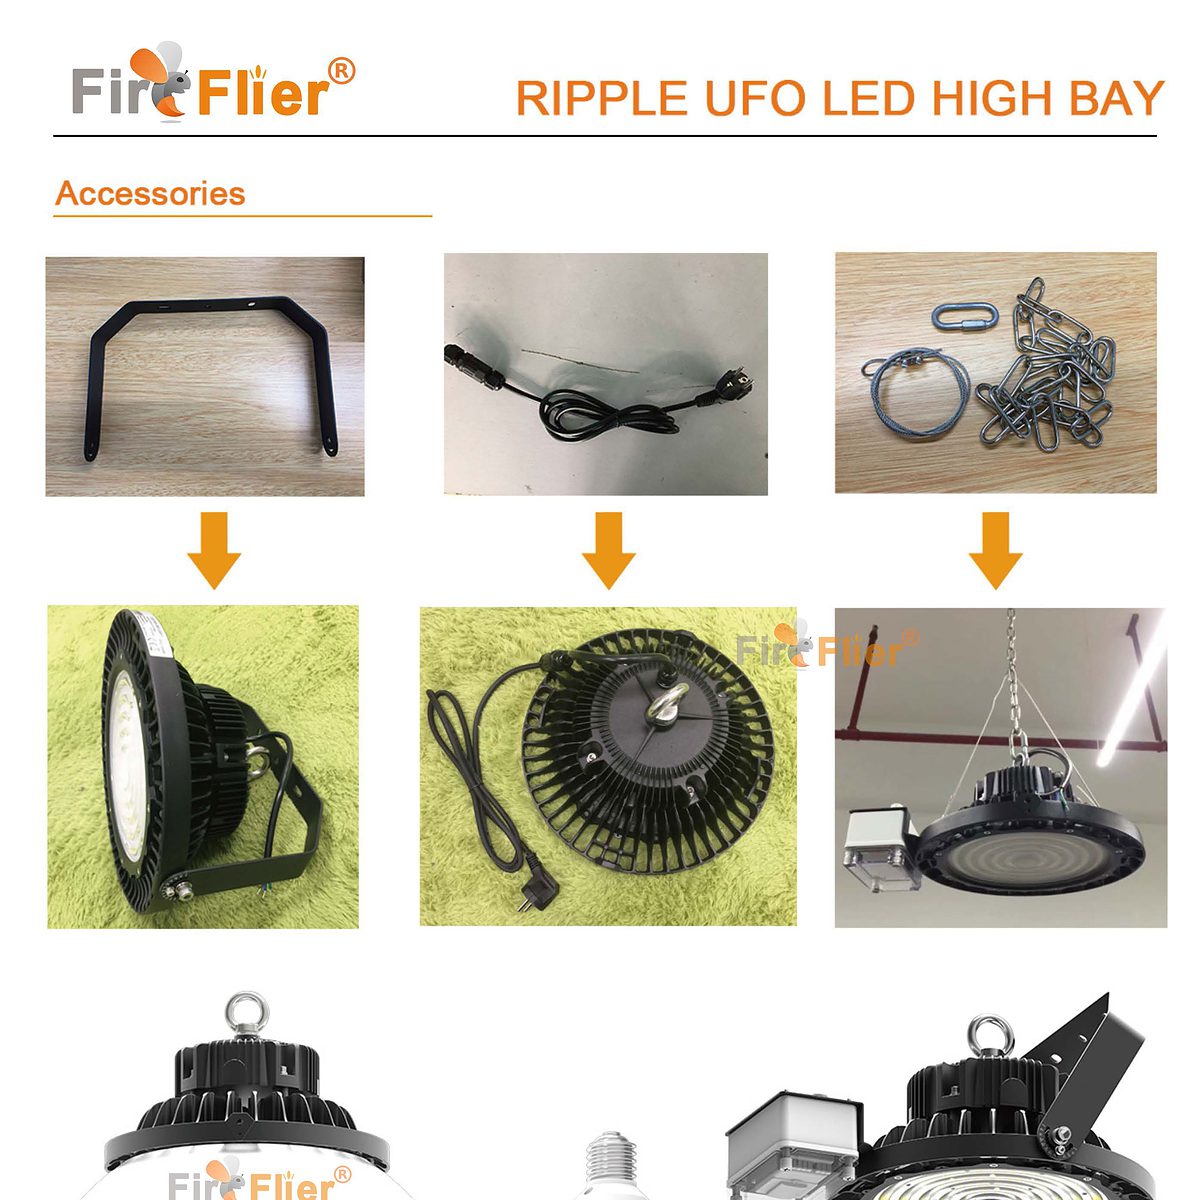 Hoja de datos de Ripple UFO LED High Bay